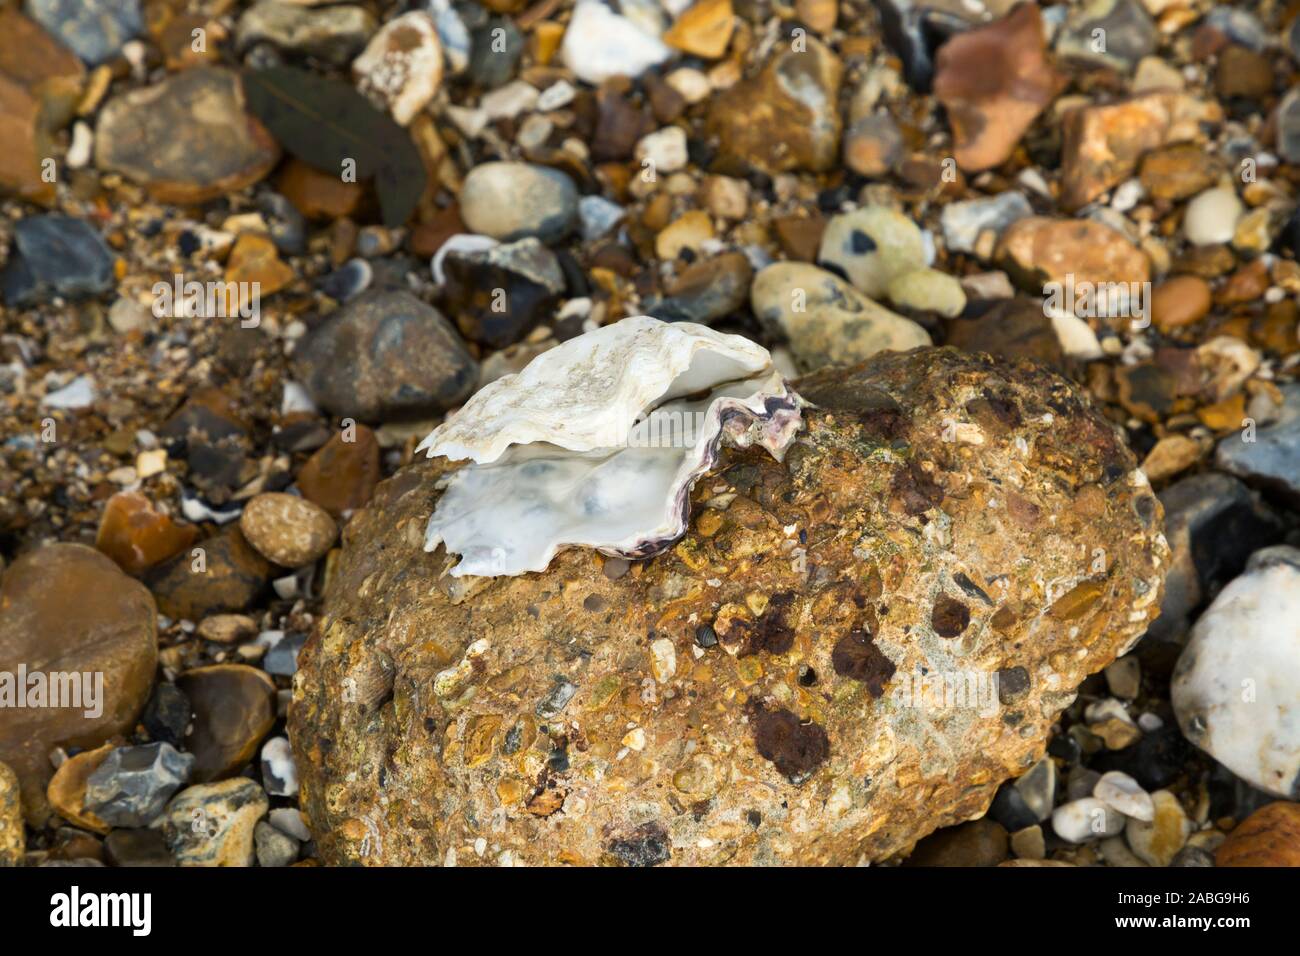 Eine offene, leere Muschel, die an einem Stück alten erodierten Betons an der Küste befestigt ist. Die Muschel ist vielleicht eine alte Auster oder eine Muschel. UK (105) Stockfoto